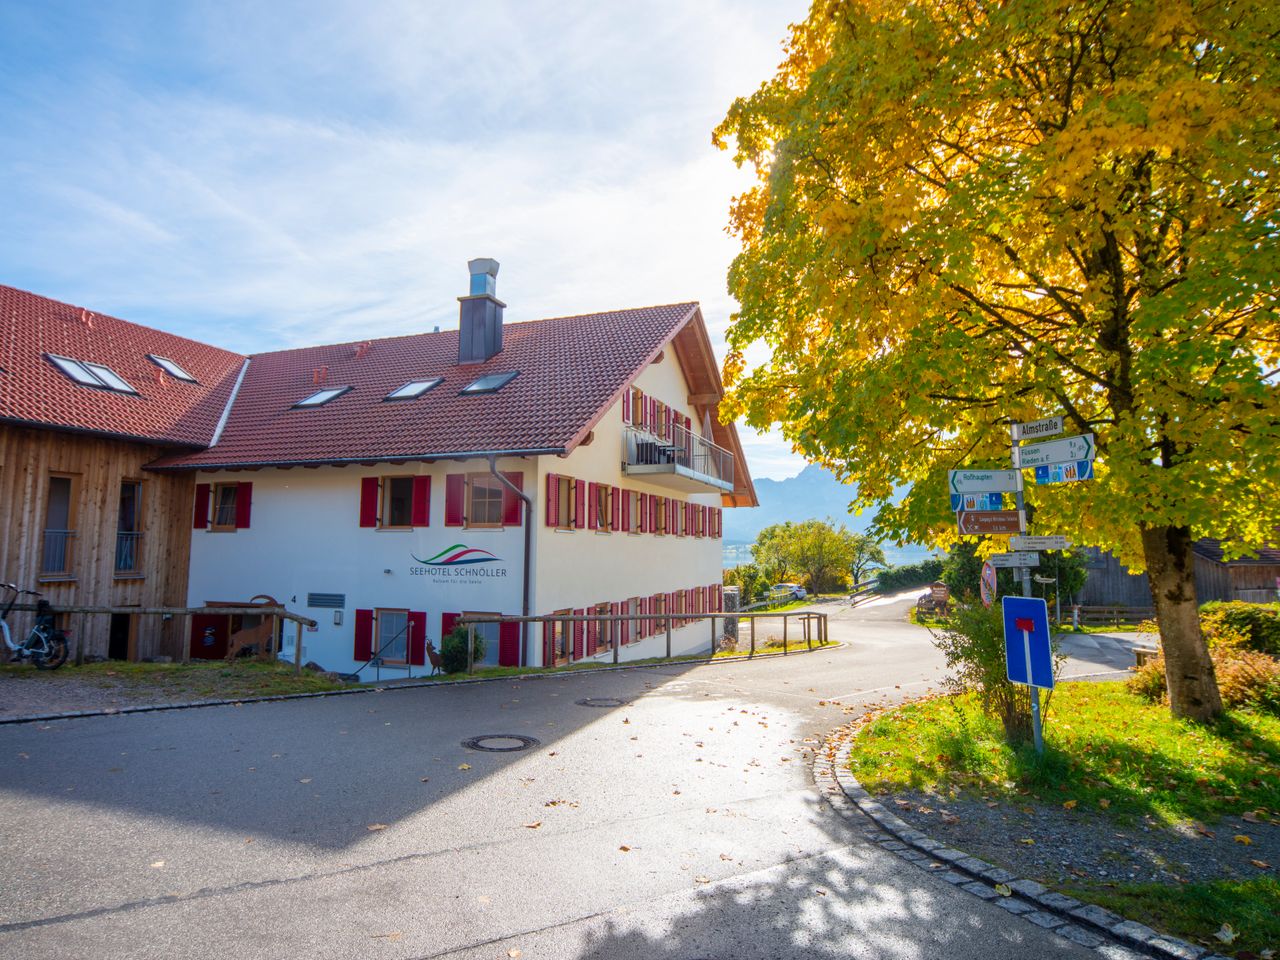 3 Tage Kurztrip zum malerischen Forggensee in Bayern